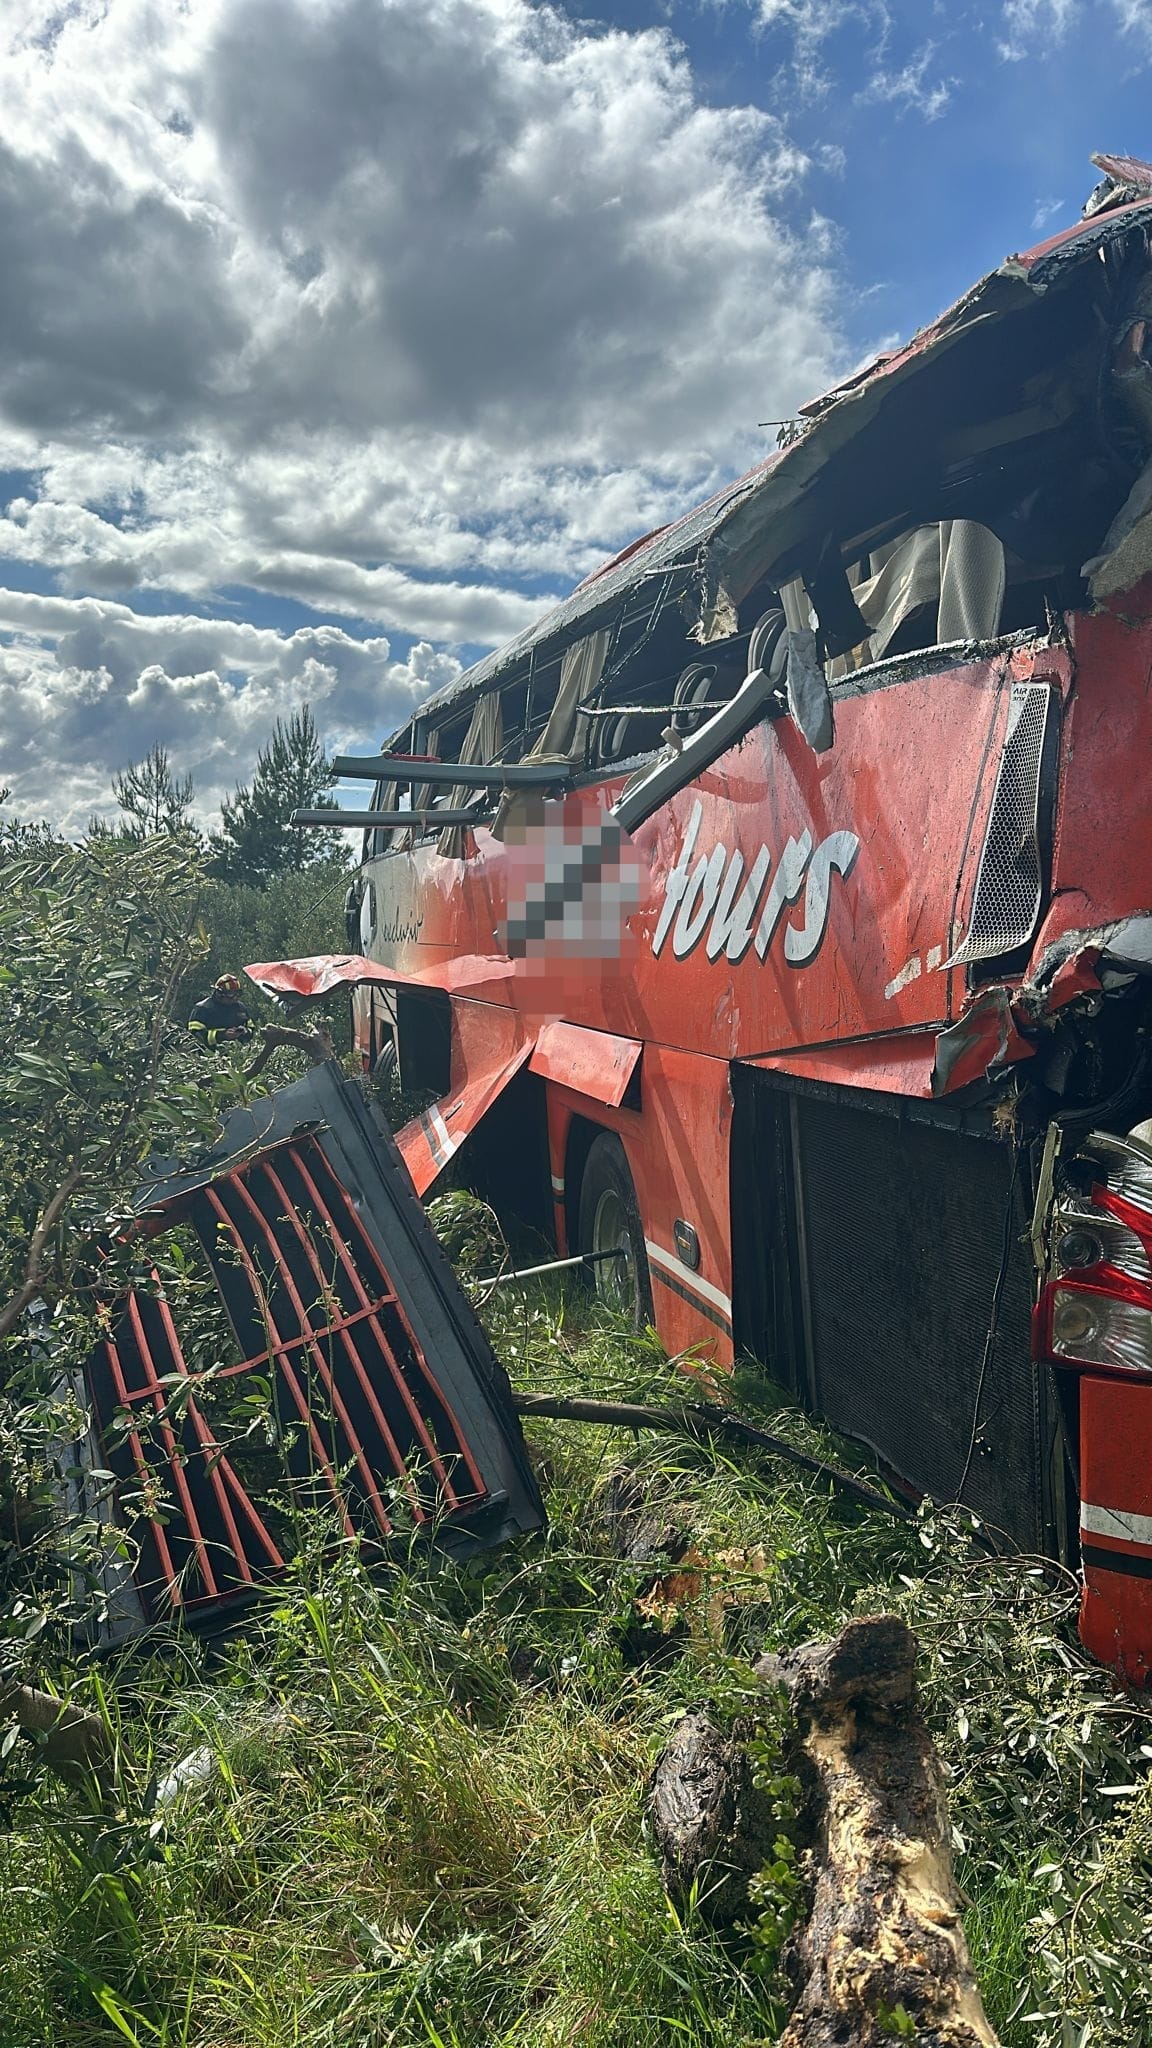 Autobus kod Makarske sletio u provaliju: "Zaustavio se 60 metara od prometnice!"